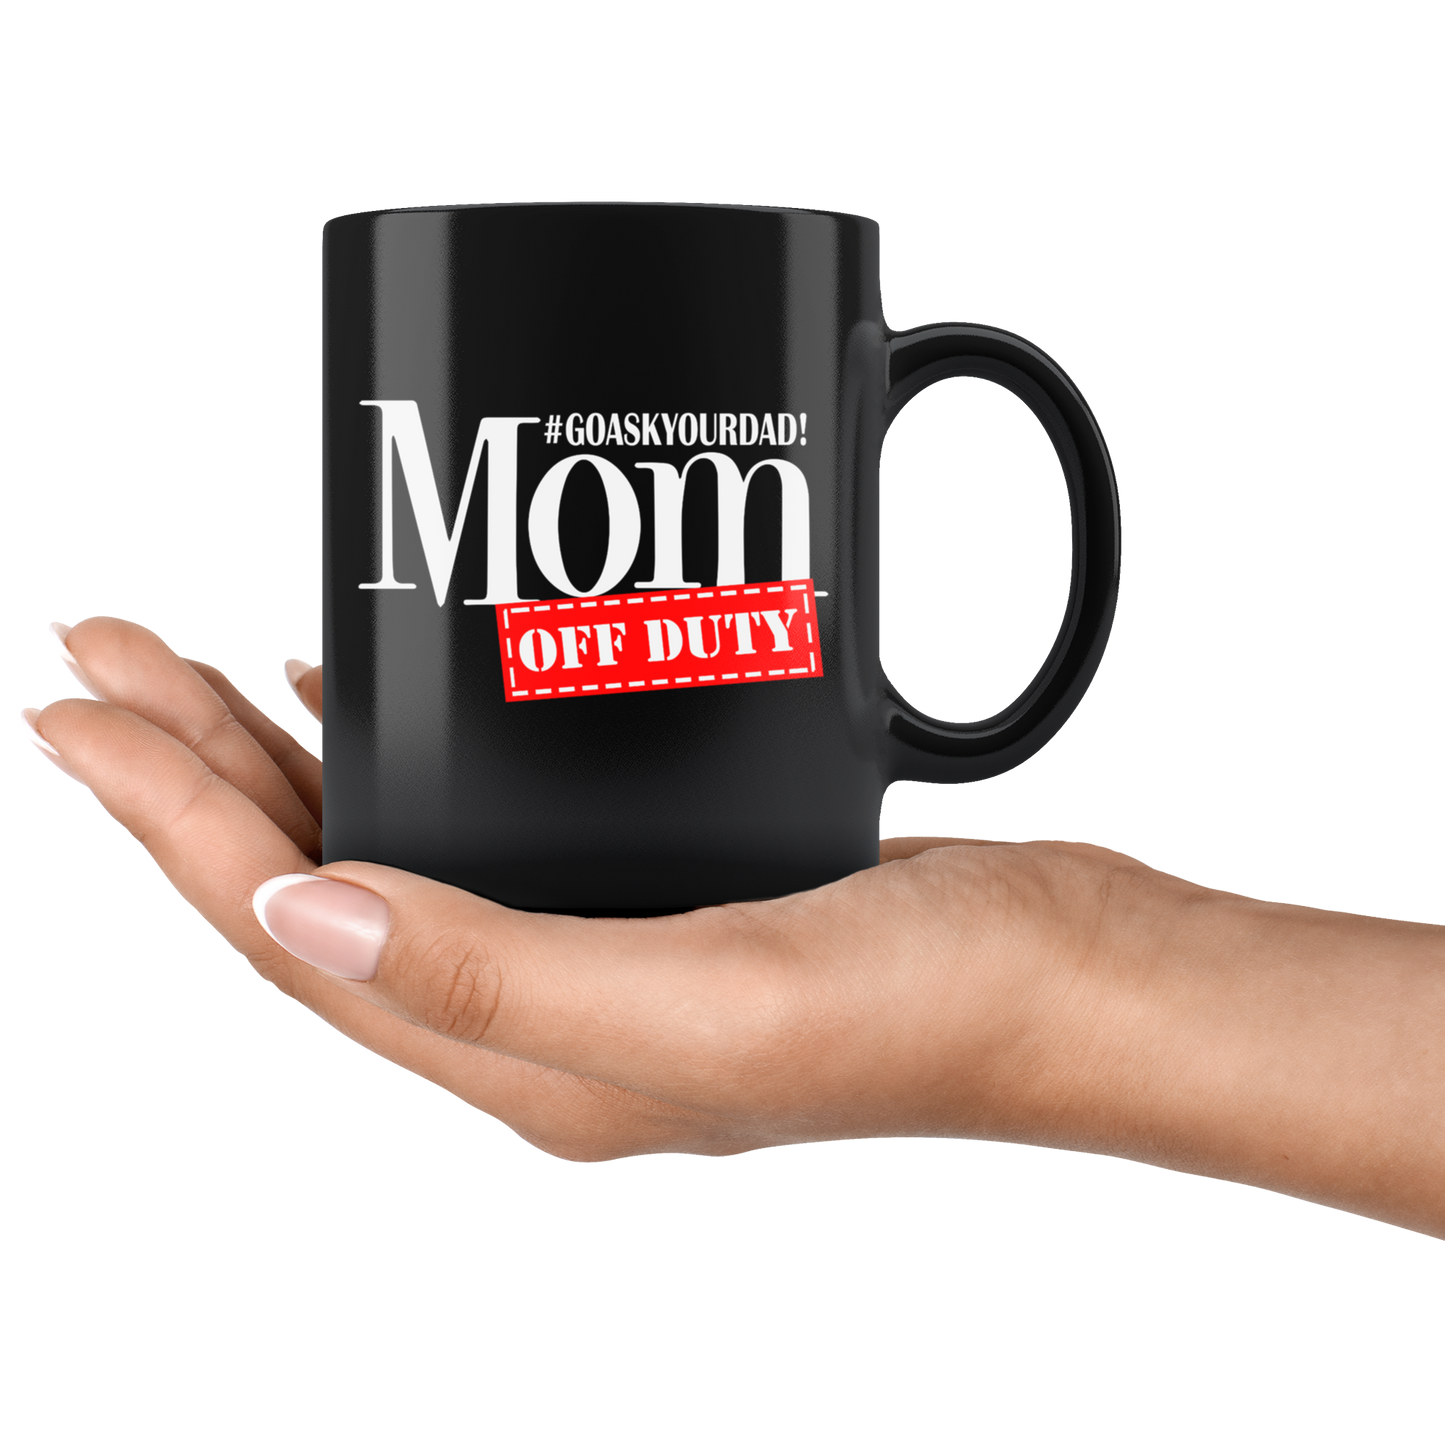 Go Ask Your Dad, Mom Off Duty Mug